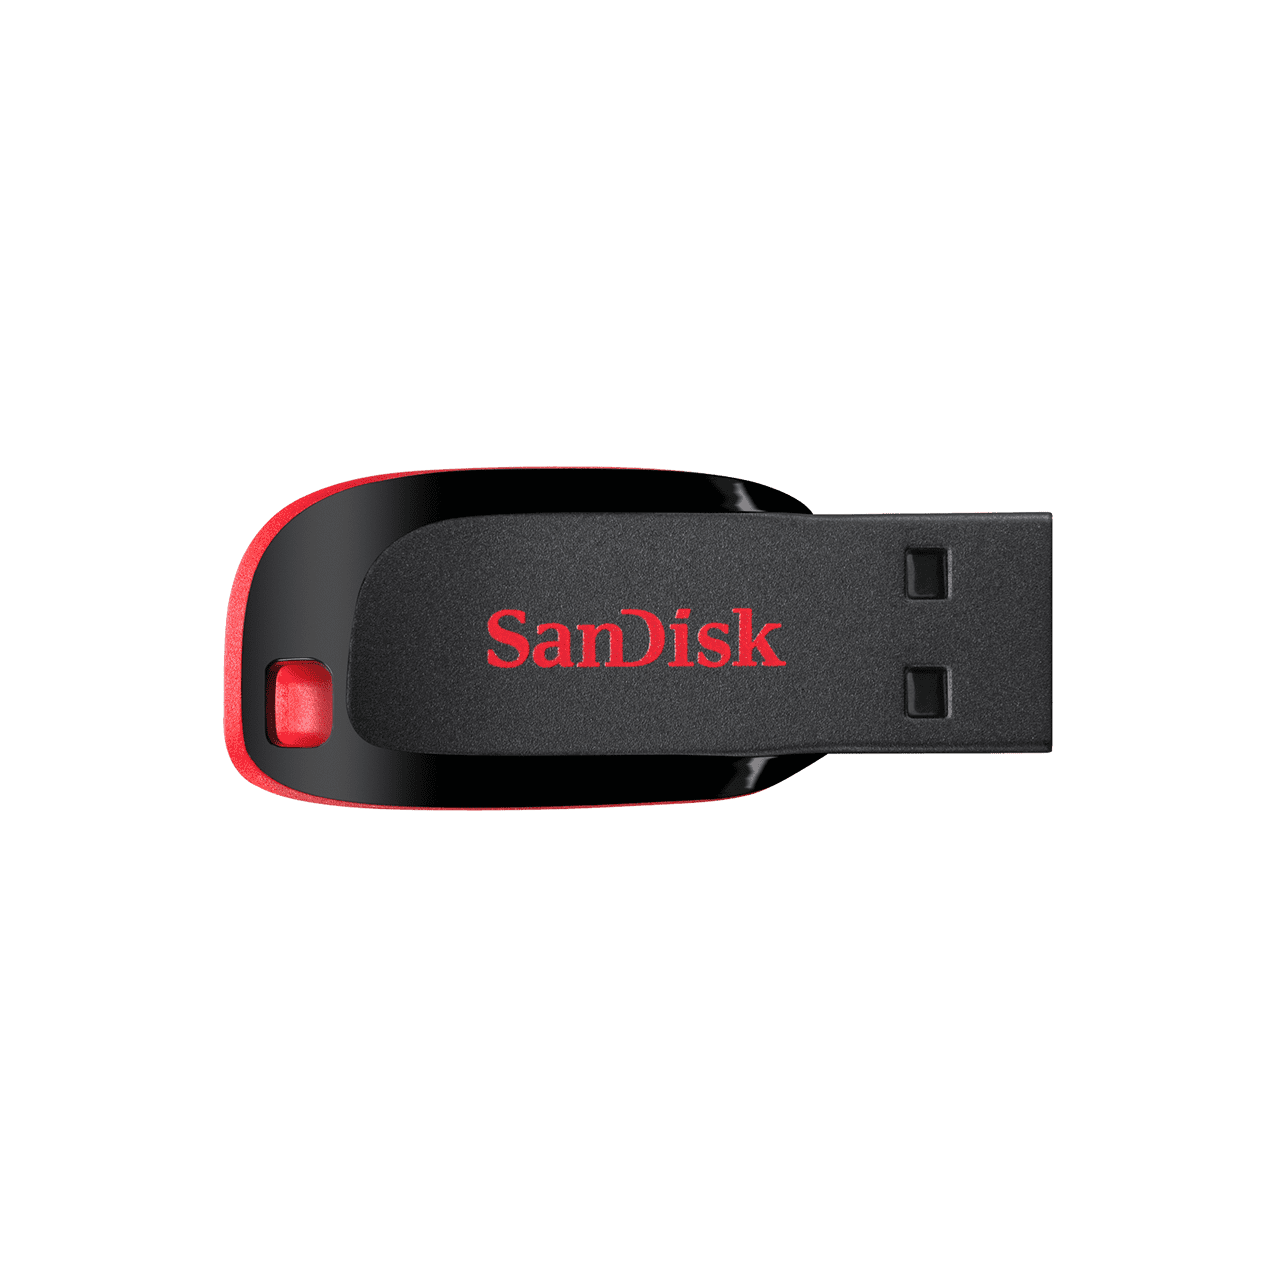 [SDCZ50-128G-B35] SanDisk Cruzer Blade 128GB